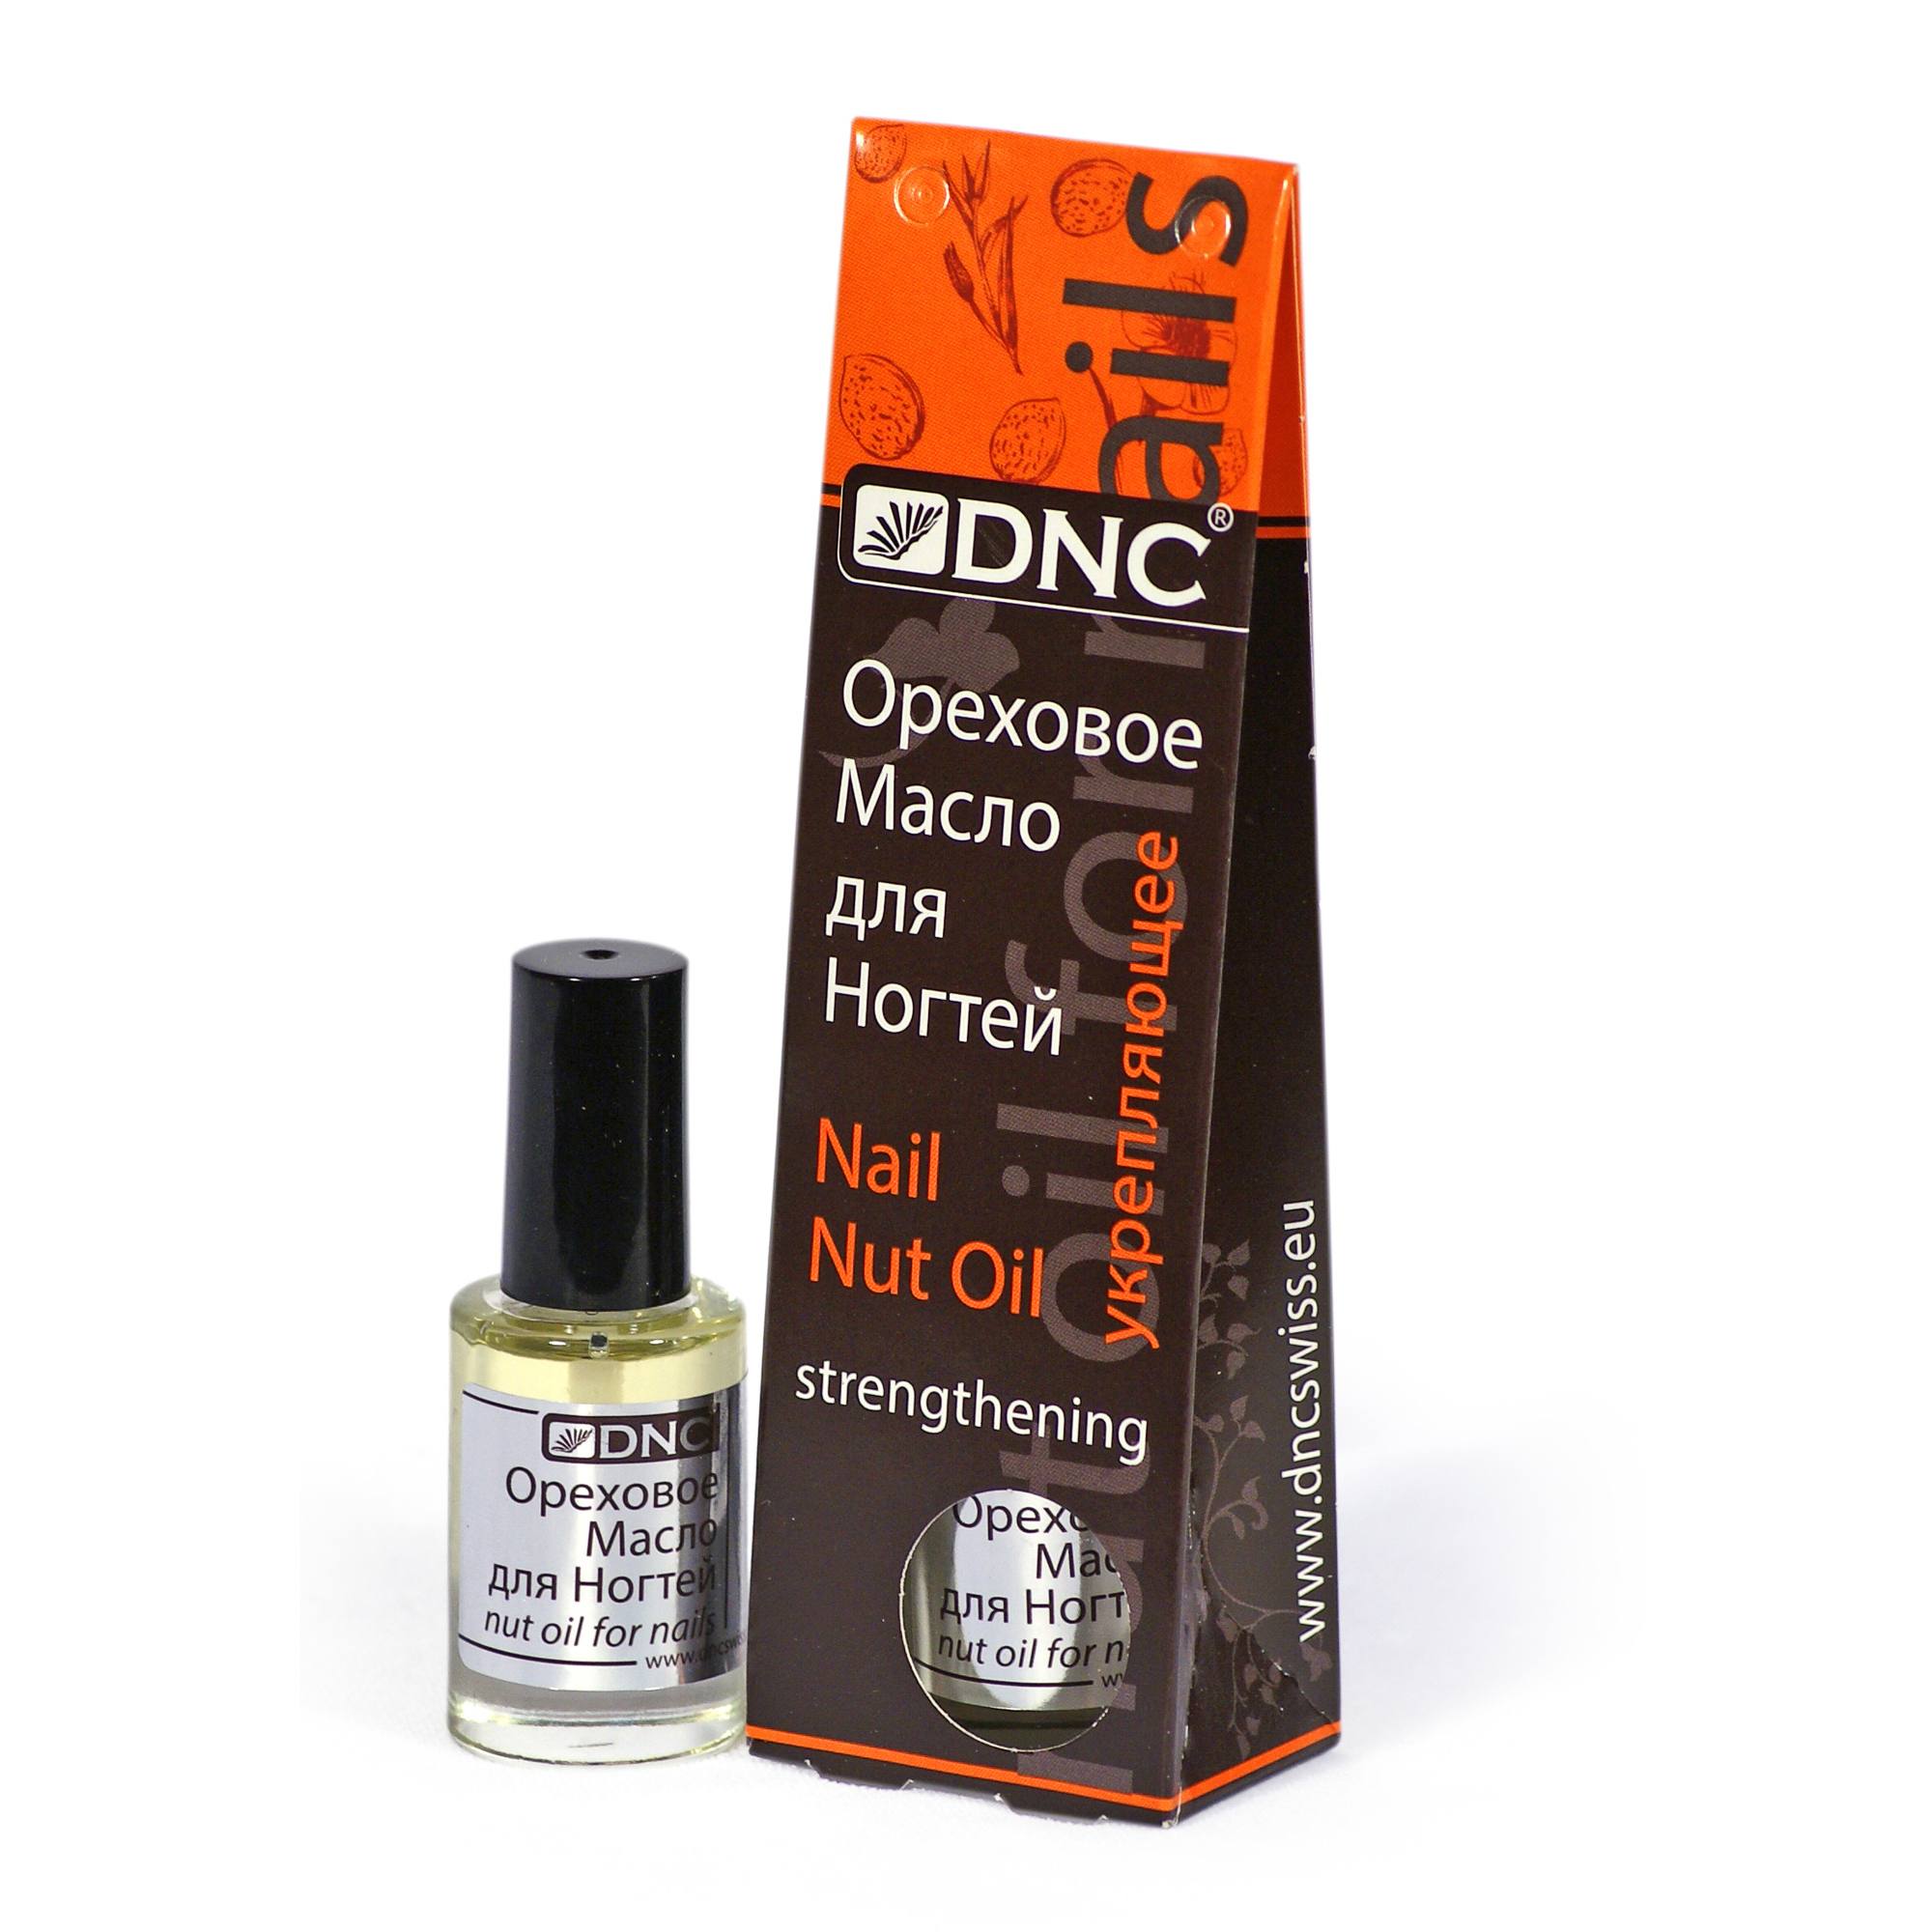 DNC Ореховое масло для ногтей , укрепляющее, 6 мл - фото 1